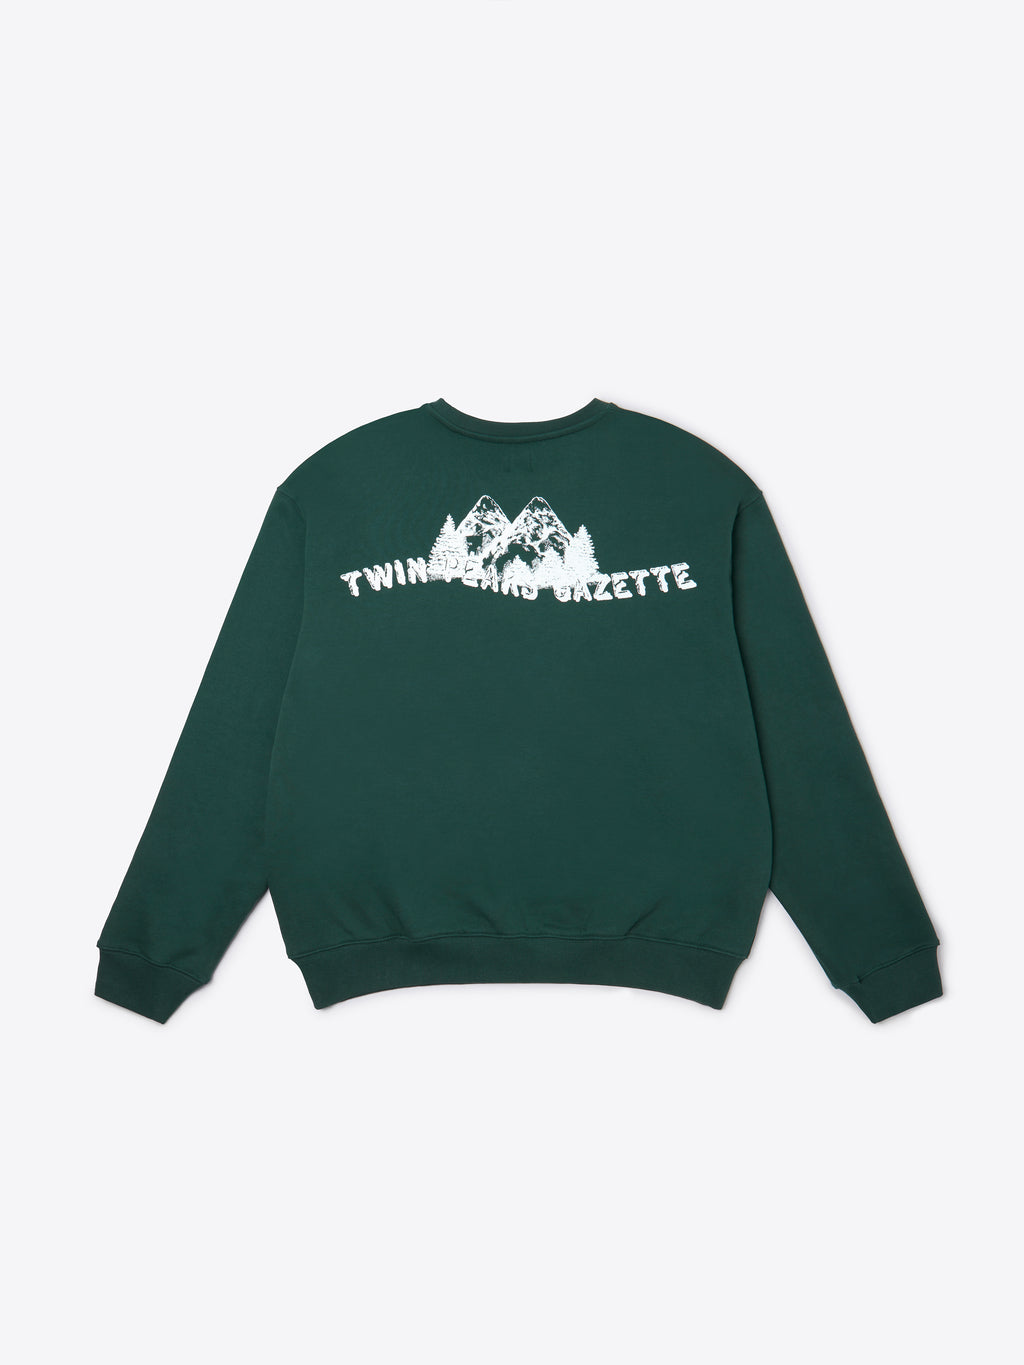 Twin Peaks Gazette Sweatshirt - Darkest Spruce